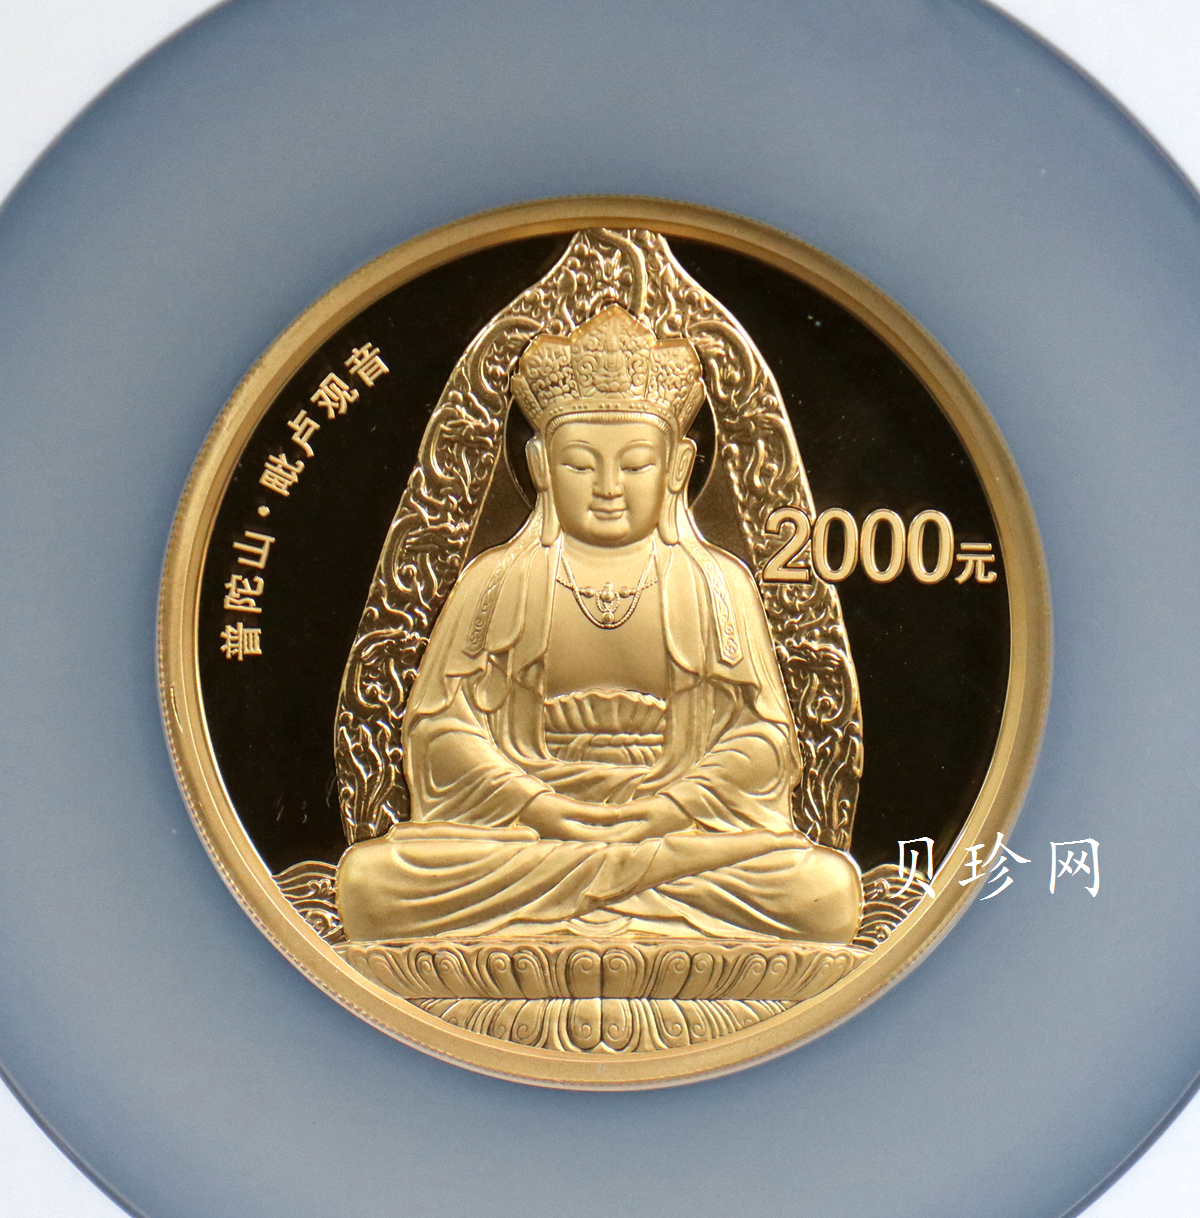 【130402】2013年中国佛教圣地（普陀山）-毗卢观音5盎司精制金币